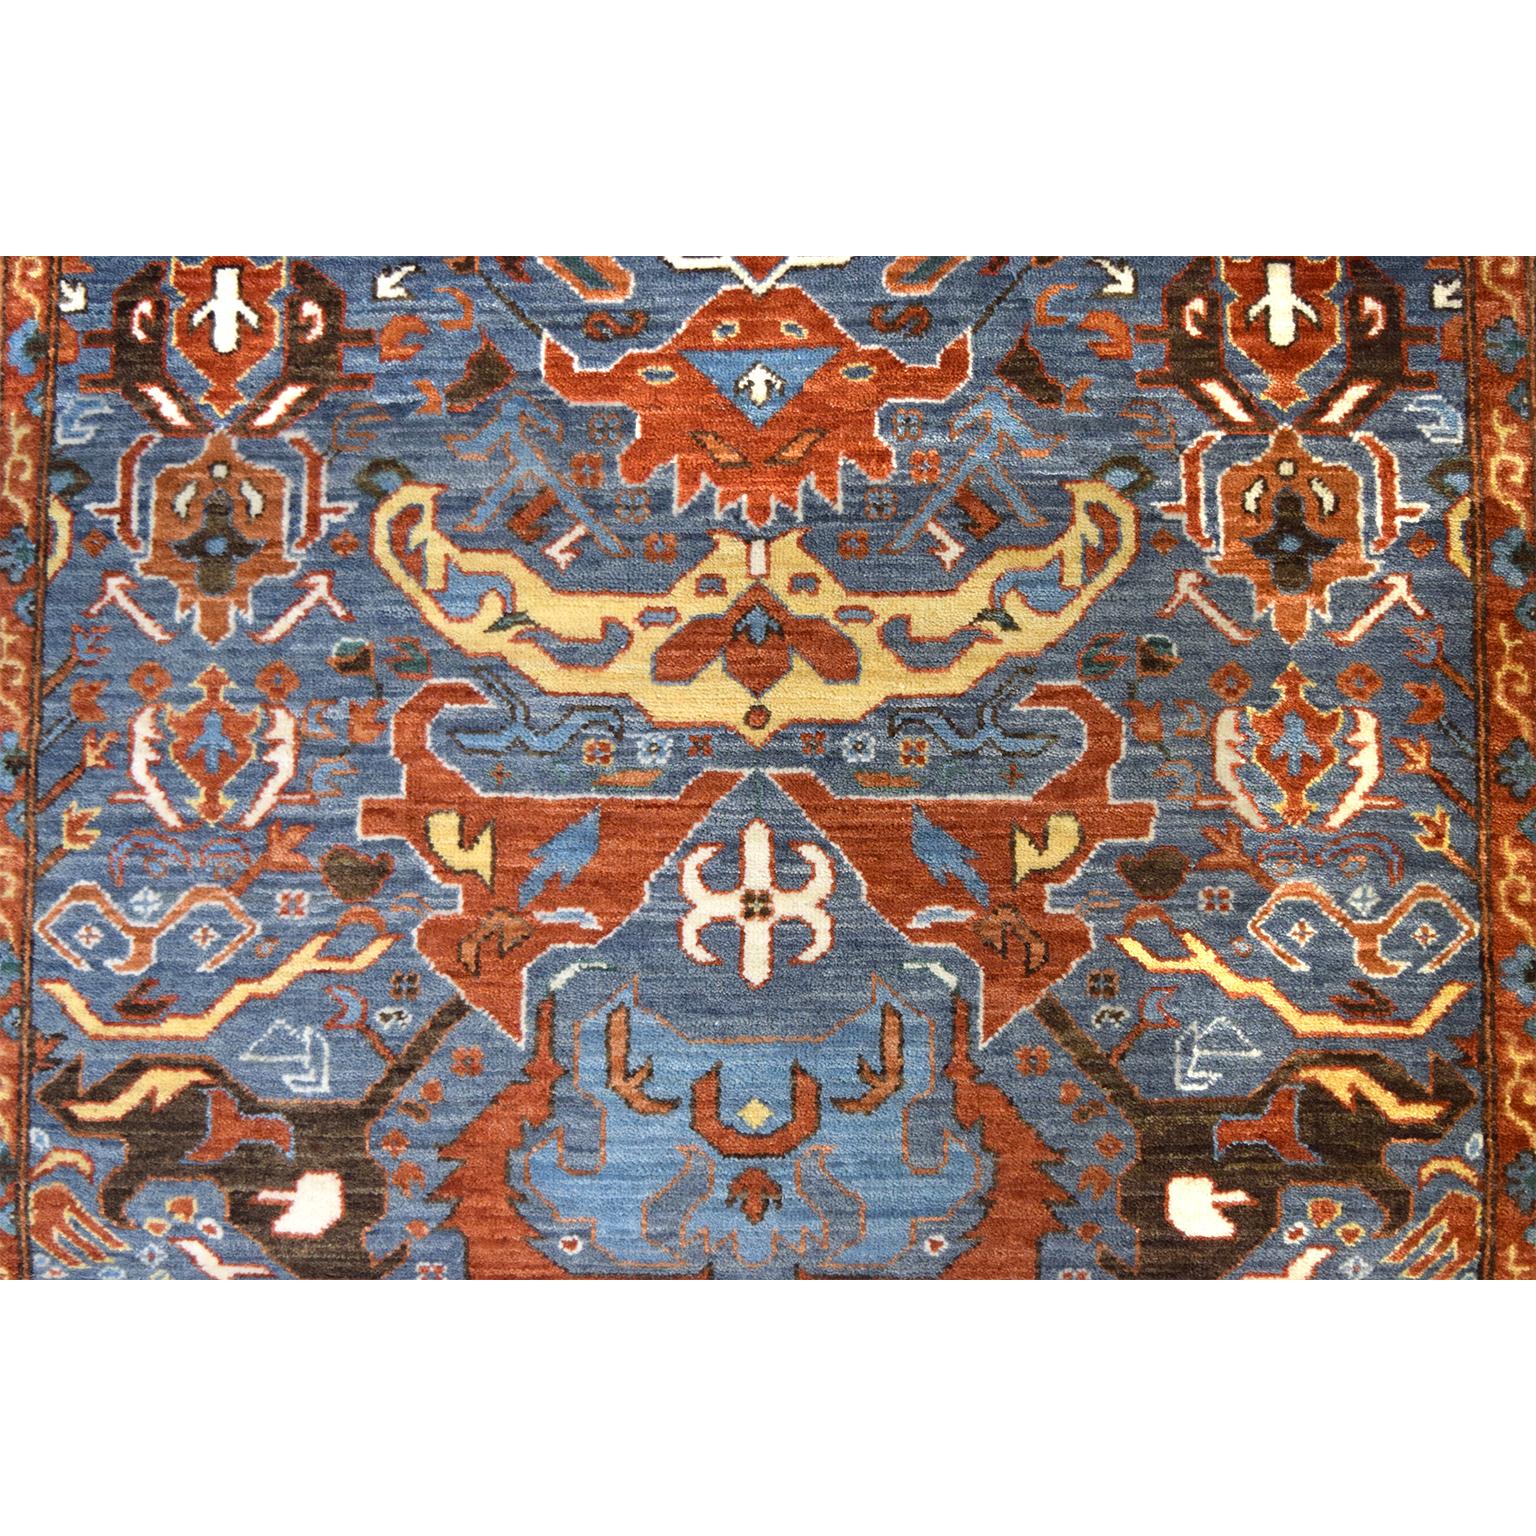 Ce tapis contemporain d'inspiration Karabagh aux tons rouges et bleus éclatants fait partie de la collection Orley Shabahang Tribal Revival et mesure environ 3' x 5'. Comme tous les tapis Orley Shabahang, cette pièce est composée de laine filée à la